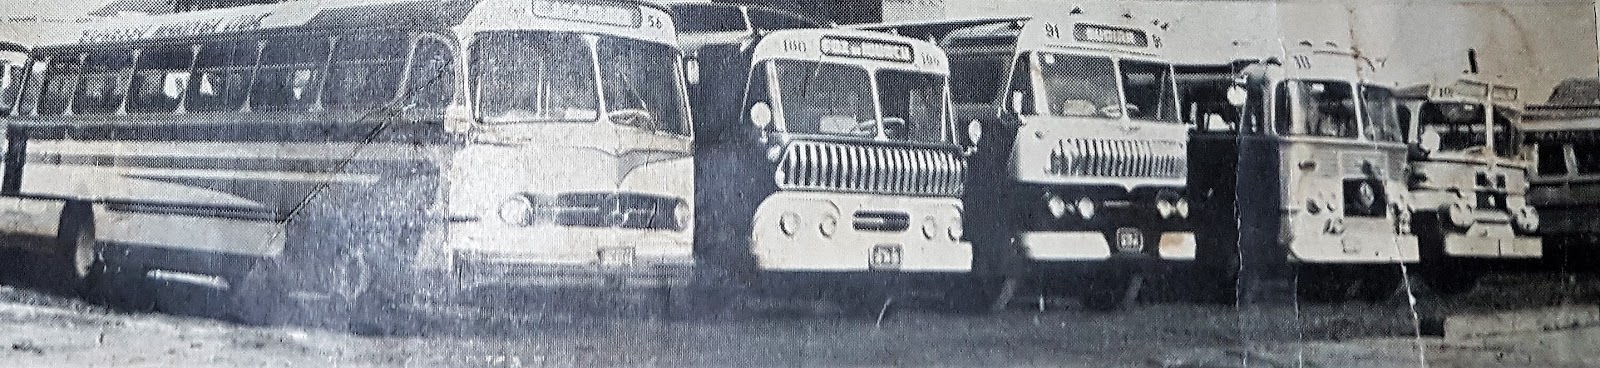 Garagem e frota da Expresso Maringá - 1957